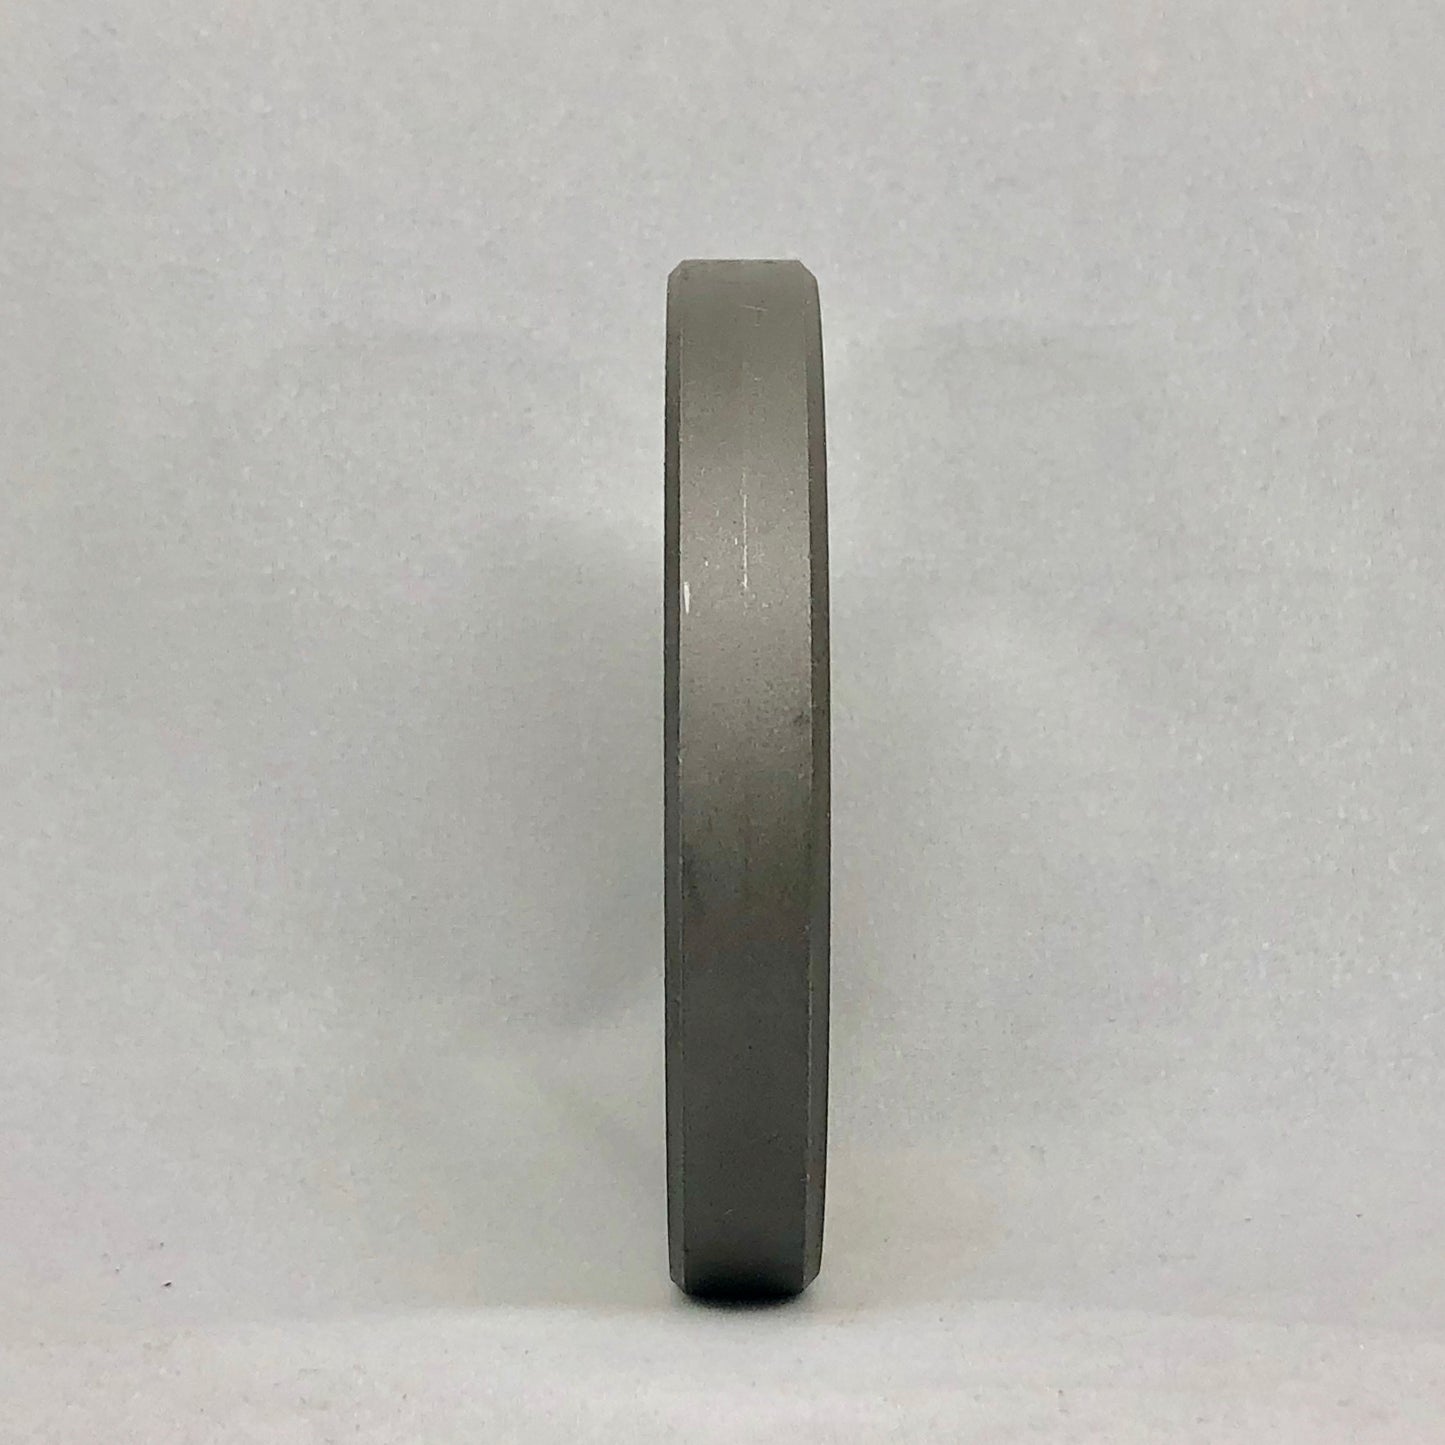 22 TRIUMPH CLEV. 1/8" HOLES - Size 22 Reversible Grinder Plate - 106308